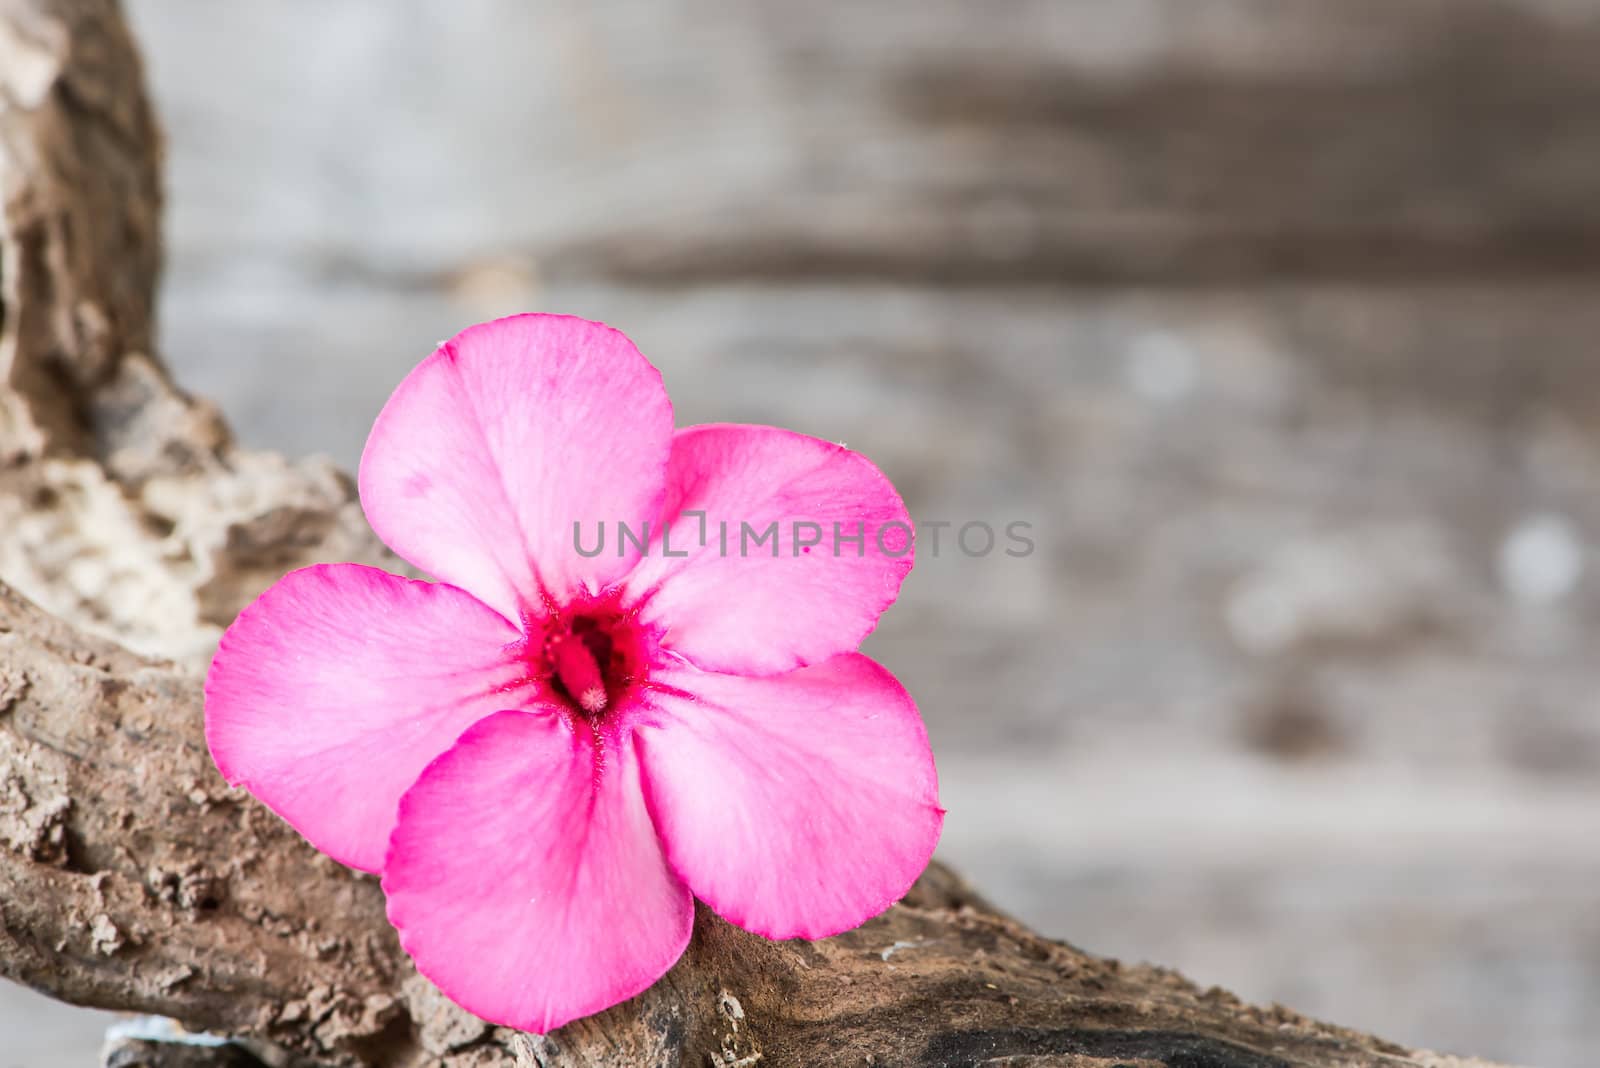 Desert rose or Ping Bignonia flower or Pink azalea flowers on old wood.